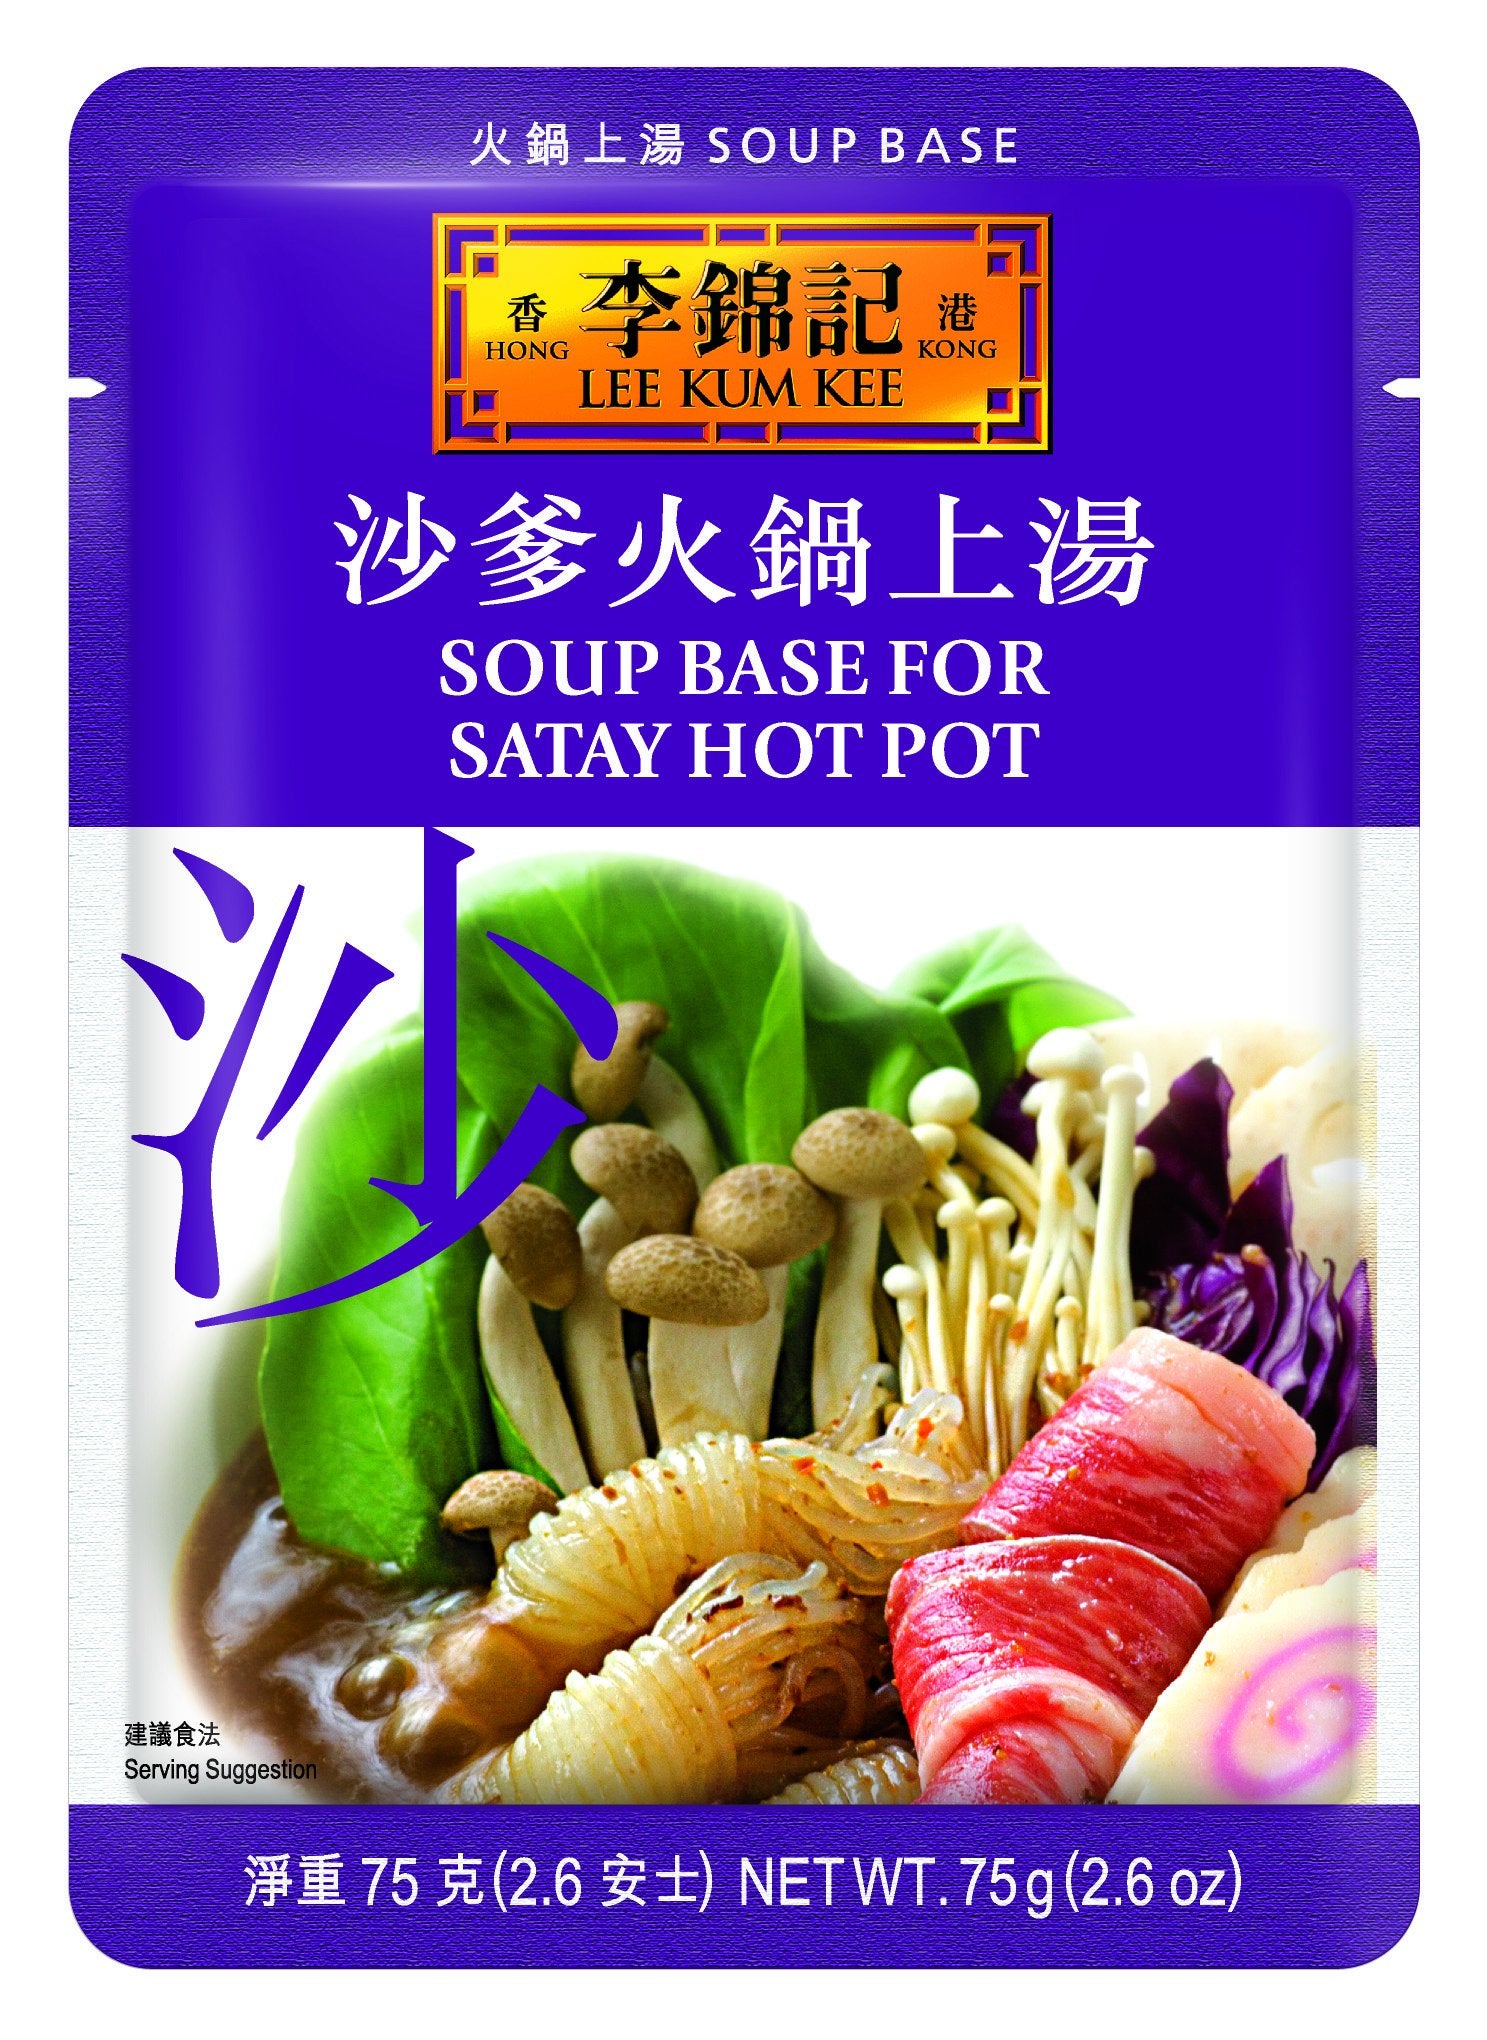 Lee Kum Kee Soup Base for Satay Hot Pot, 2.6 Ounce